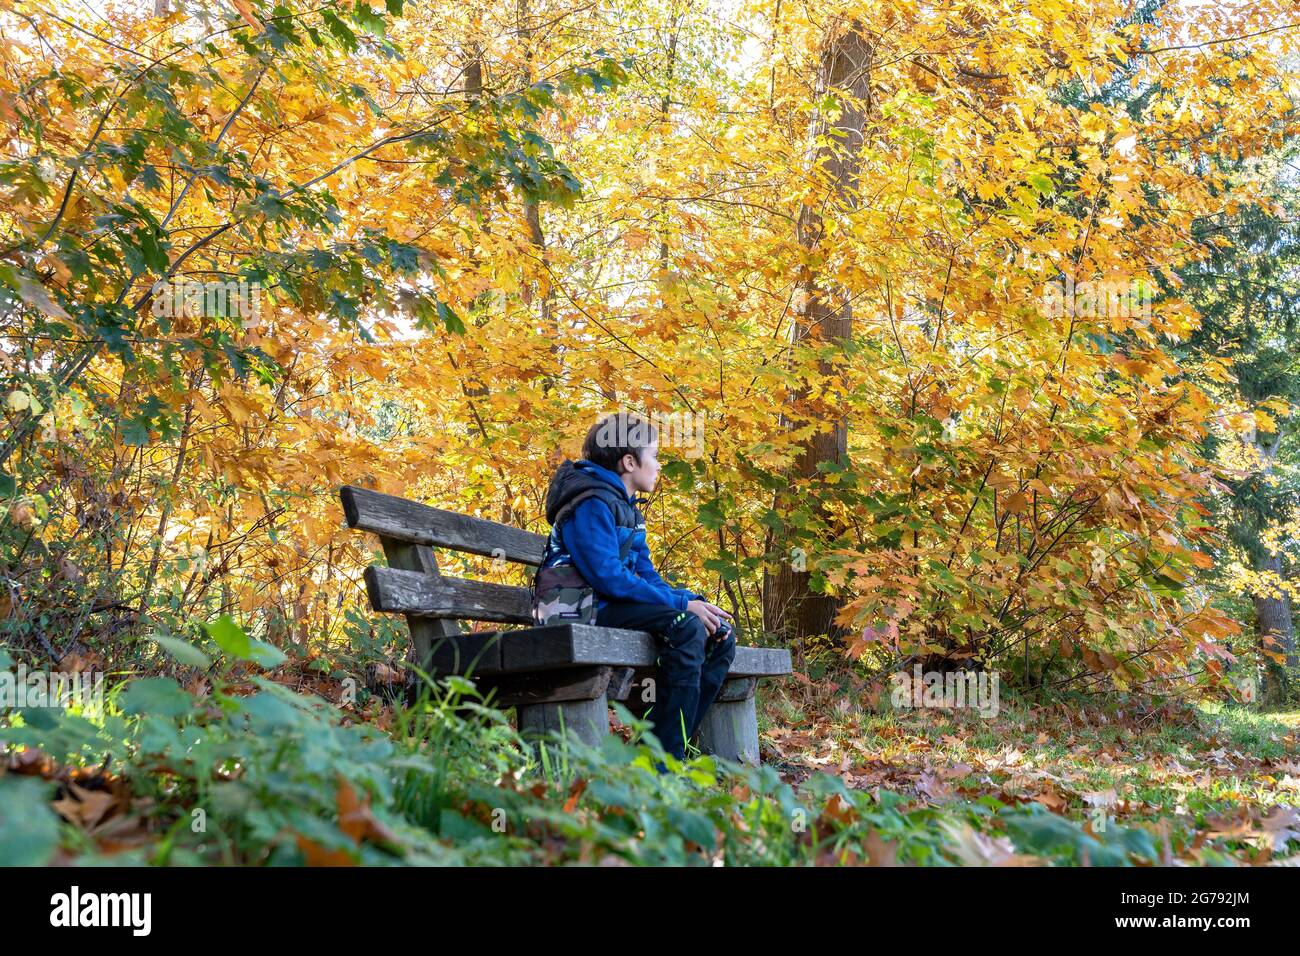 Europe, Allemagne, Bade-Wurtemberg, Stuttgart, garçon assis sur un banc dans la forêt d'automne colorée Banque D'Images